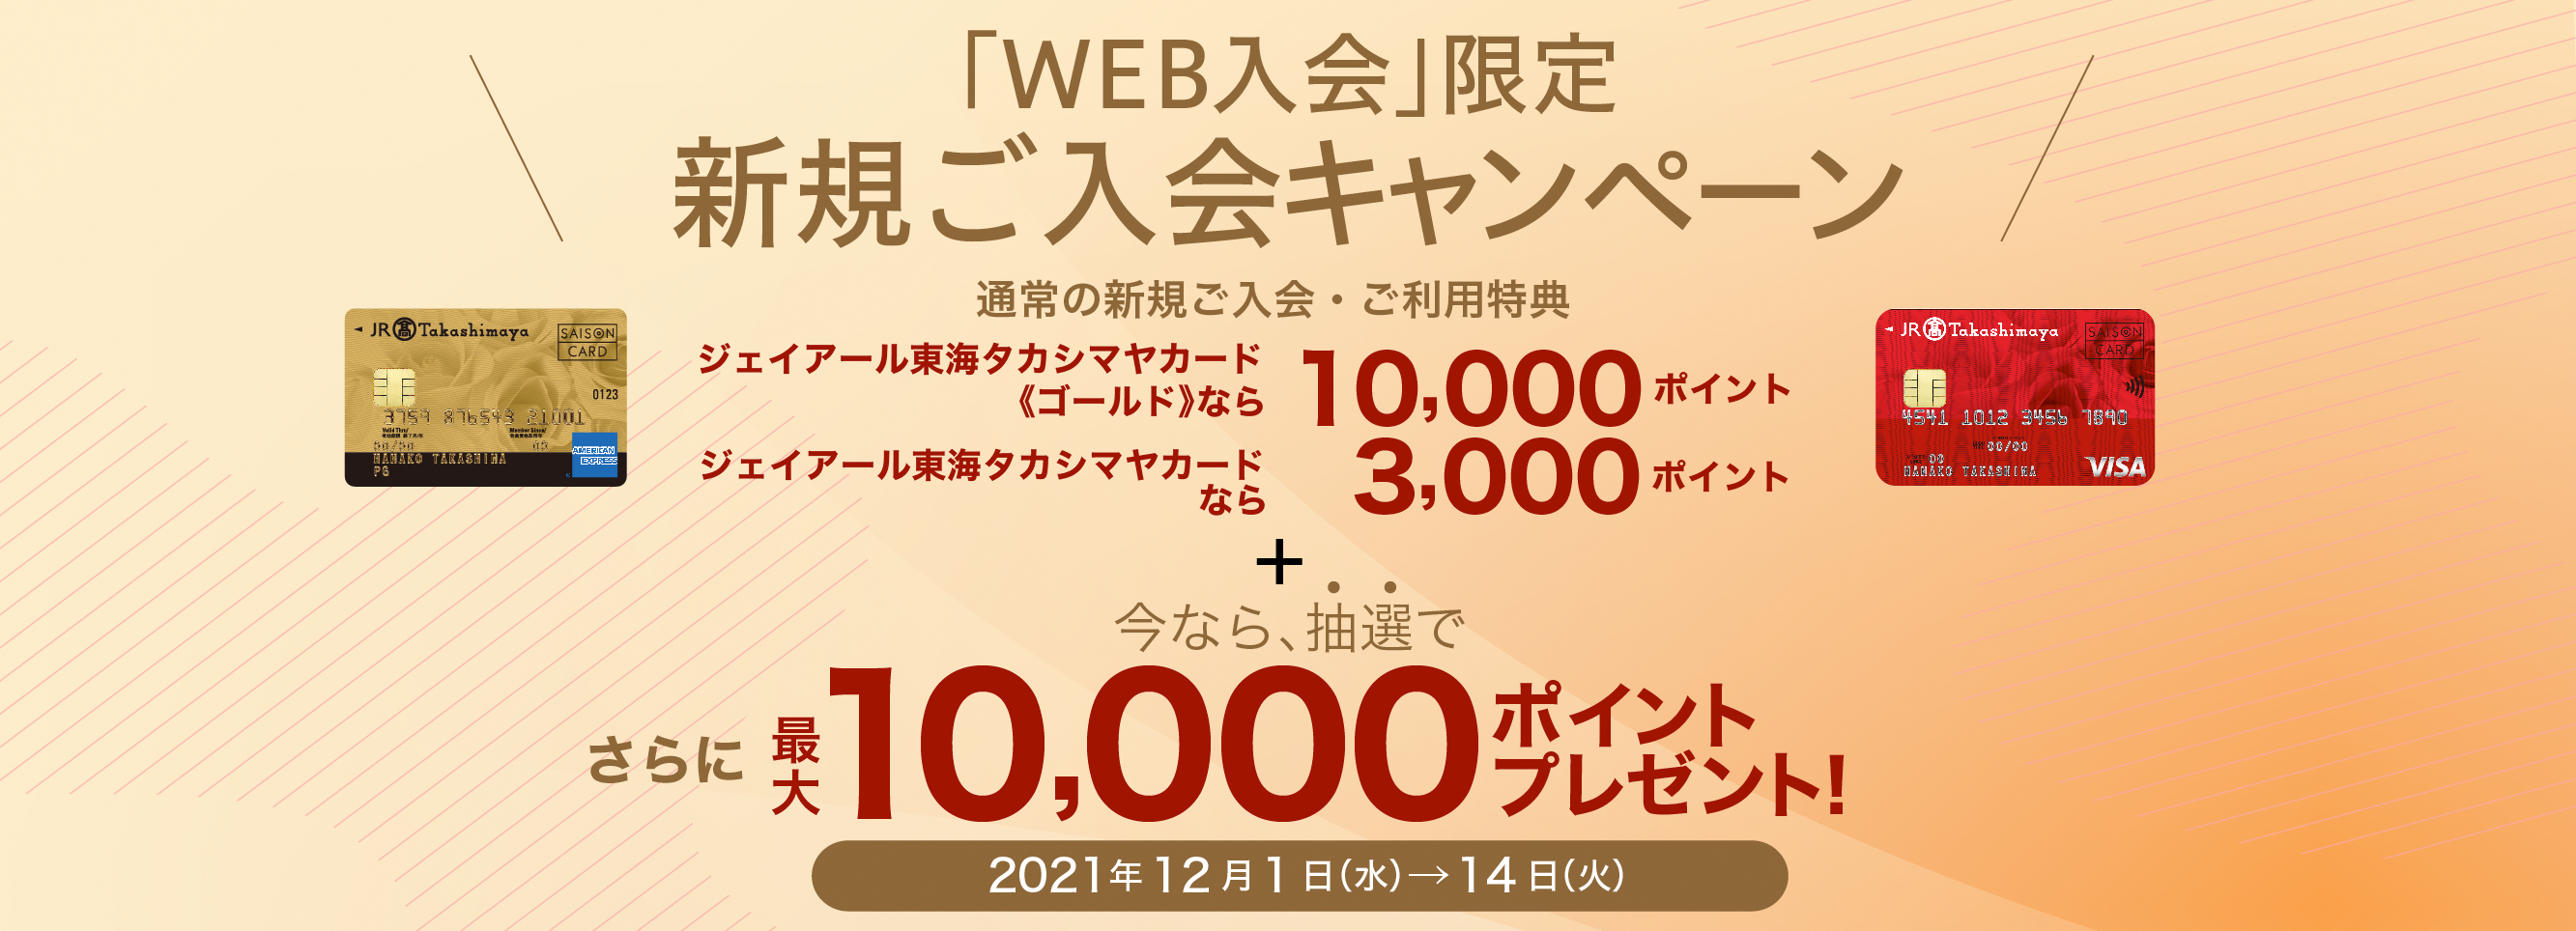 「WEB入会」限定 新規ご入会キャンペーン 通常の新規ご入会・ご利用特典 ジェイアール東海タカシマヤカード《ゴールド》なら最大10,000ポイント ジェイアール東海タカシマヤカードなら 最大3,000ポイント 今なら、抽選で さらに、最大10,000ポイントプレゼント！ 2021年12月1日（水）→14日（火）